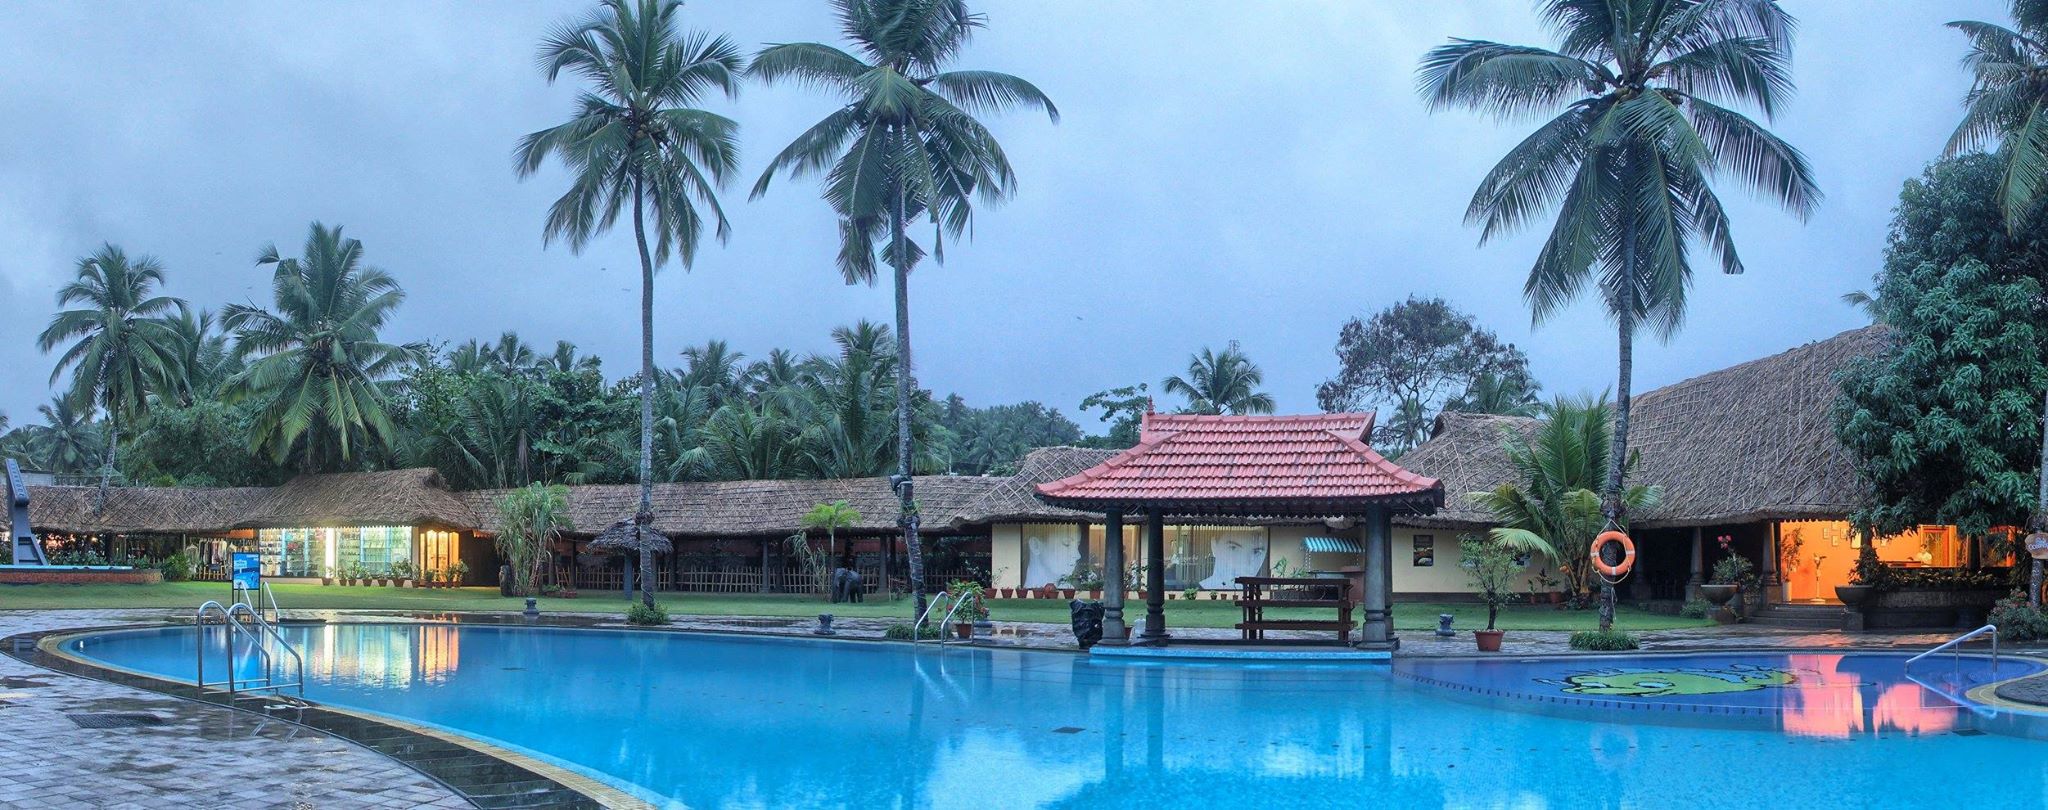 Udaya Samudra Leisure Beach Hotel Thiruvananthapuram